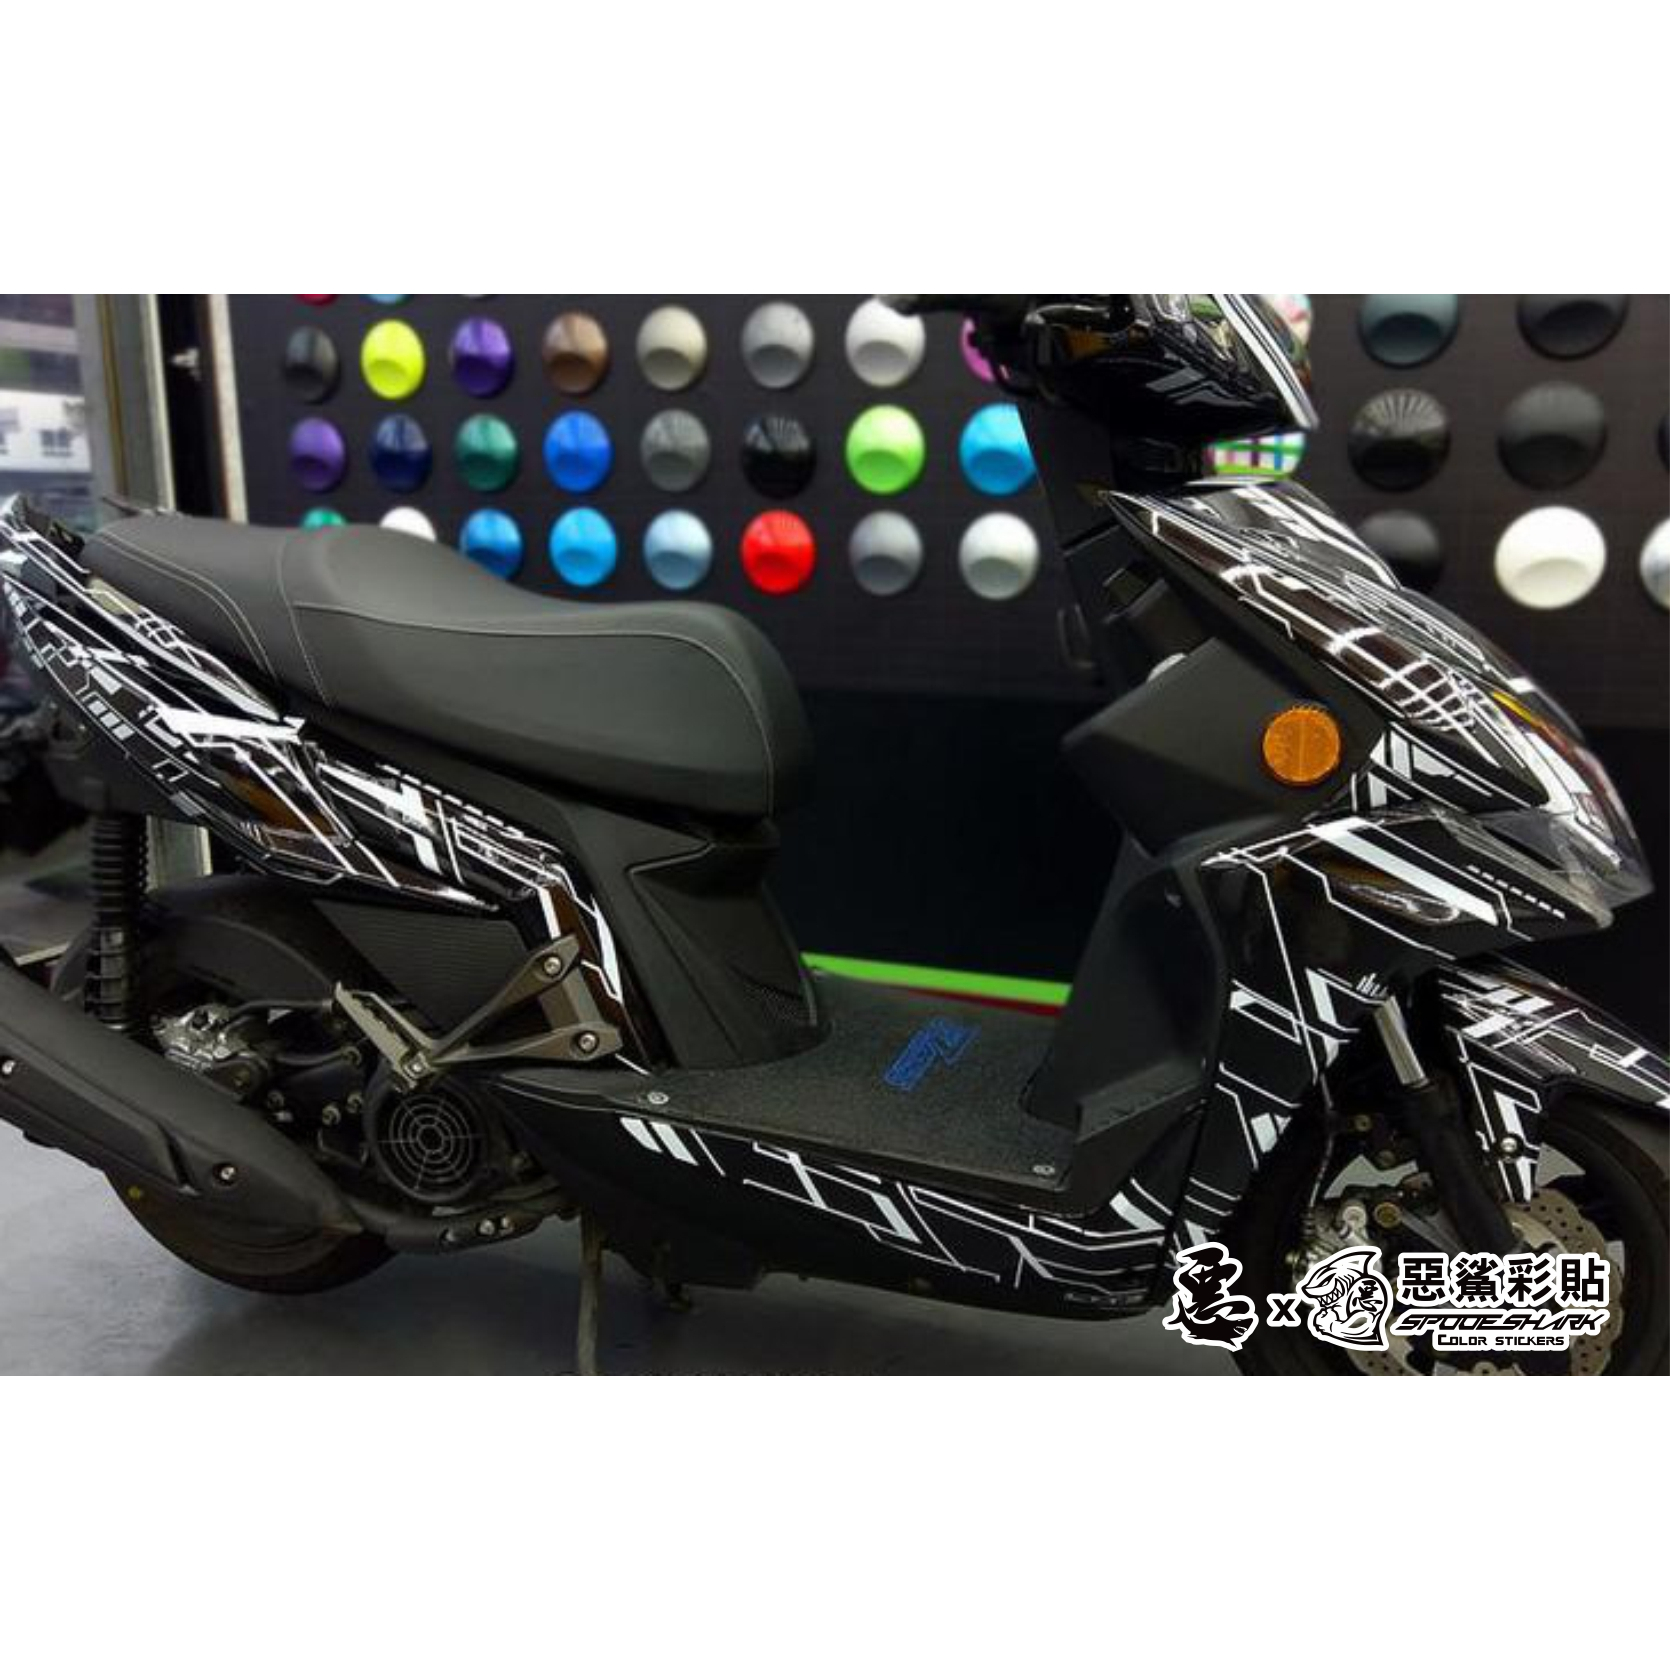 Racing MAN 雷霆 S150  (共6色)冷光電子 彩貼 彩繪 防刮 套組 車殼 保護 車膜 惡鯊彩貼